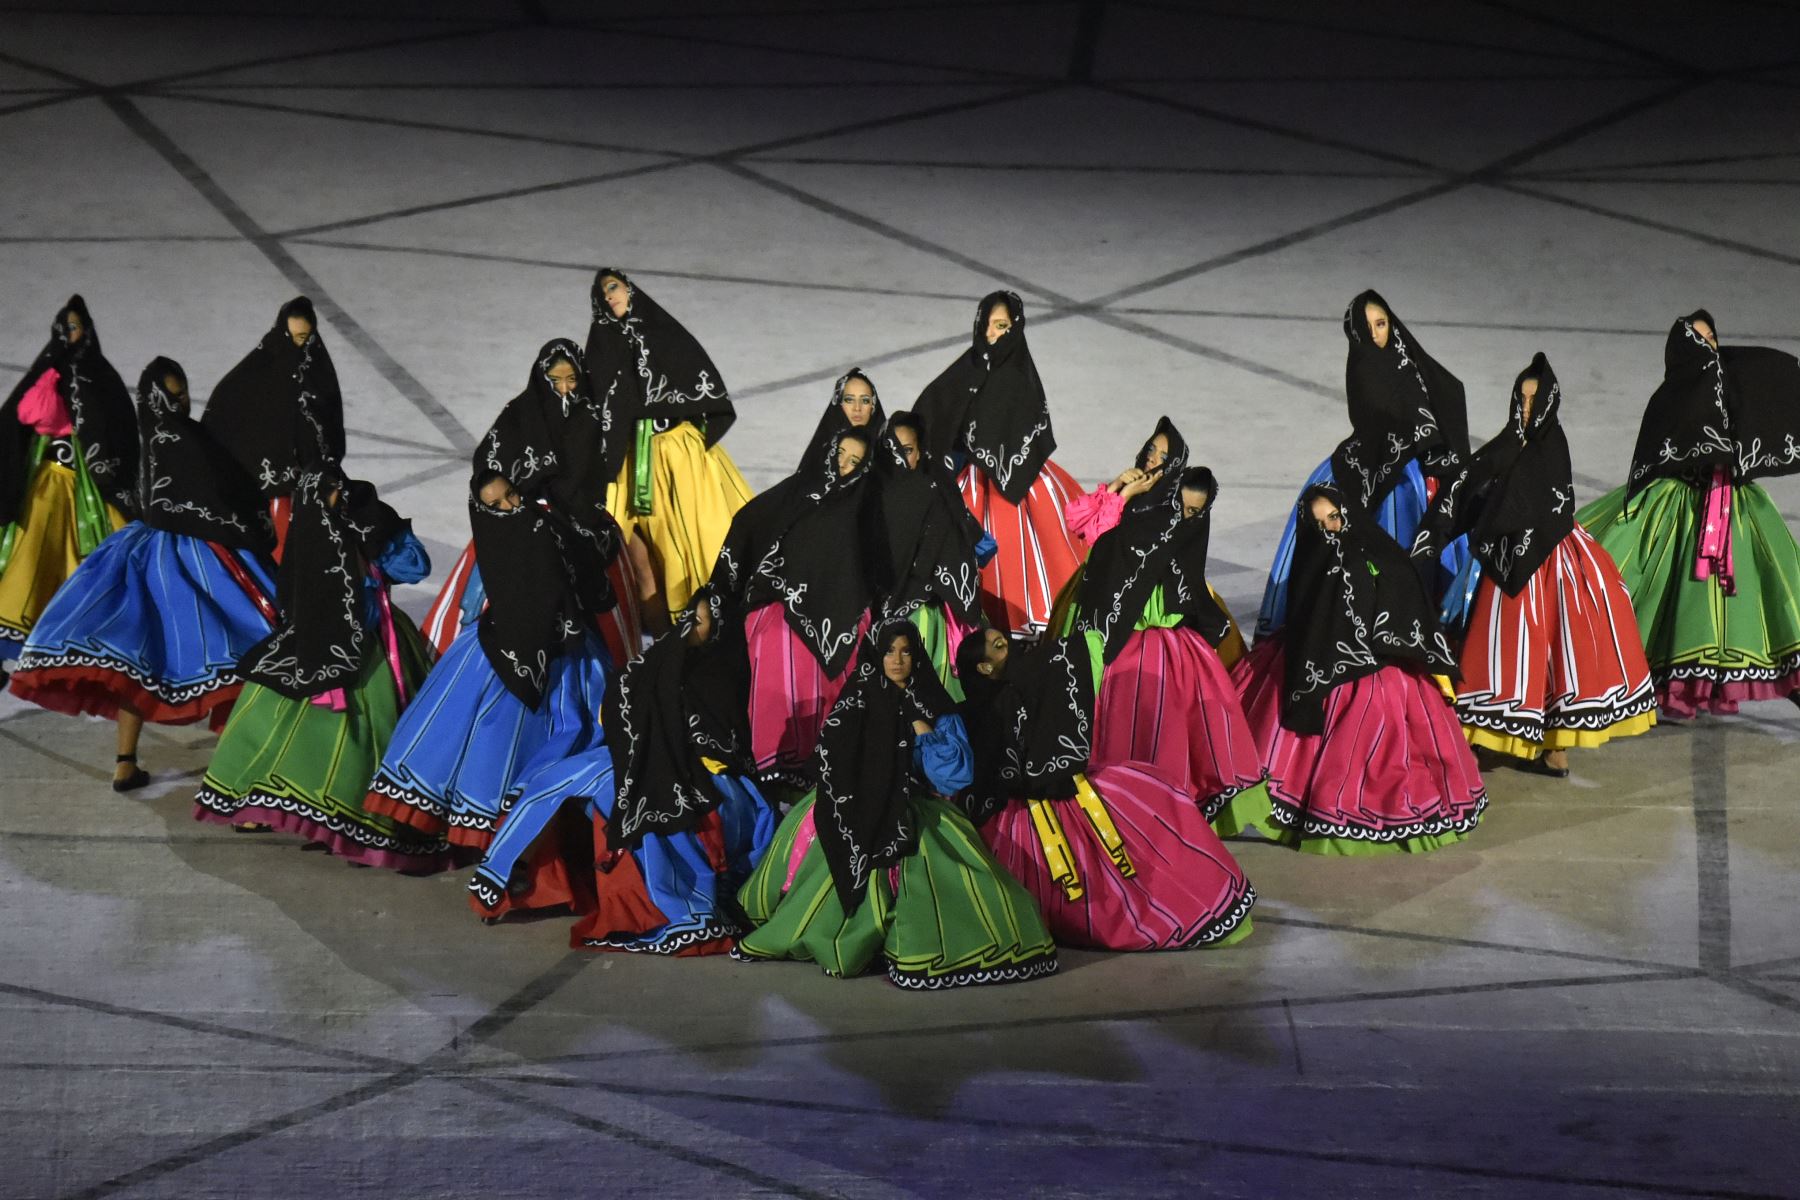 Los artistas se presentan durante la ceremonia de apertura de los Juegos Panamericanos de Lima 2019 en el Estadio Nacional de Lima.
Foto: AFP